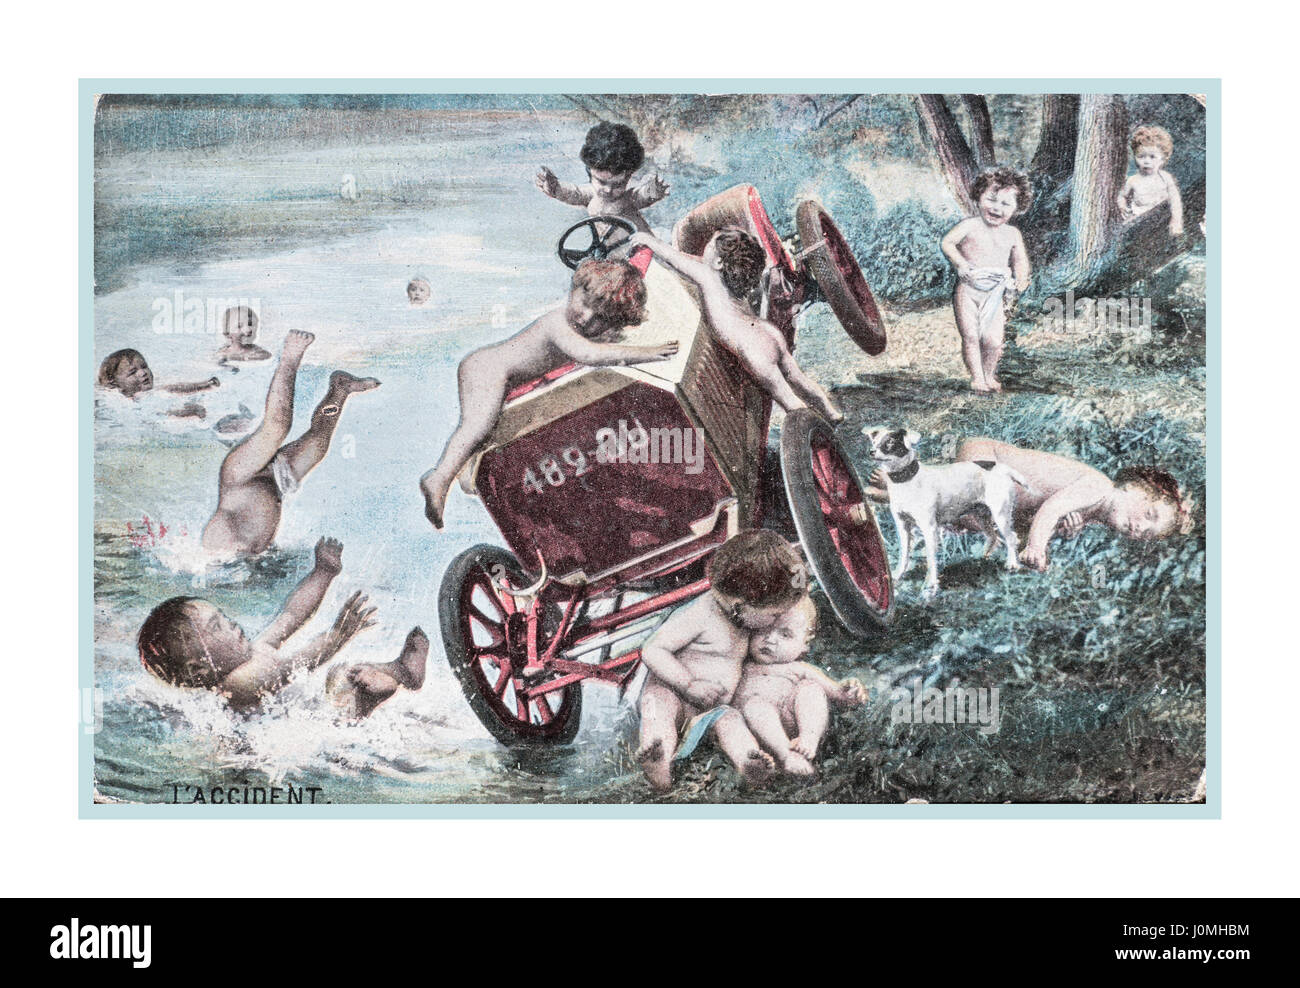 World War 1 Fantasy Vintage carte postale française du 23 avril 1917 montrant angelots impliqués avec un accident de voiture.. Envoyé par un soldat britannique du Front de l'Ouest en France Banque D'Images